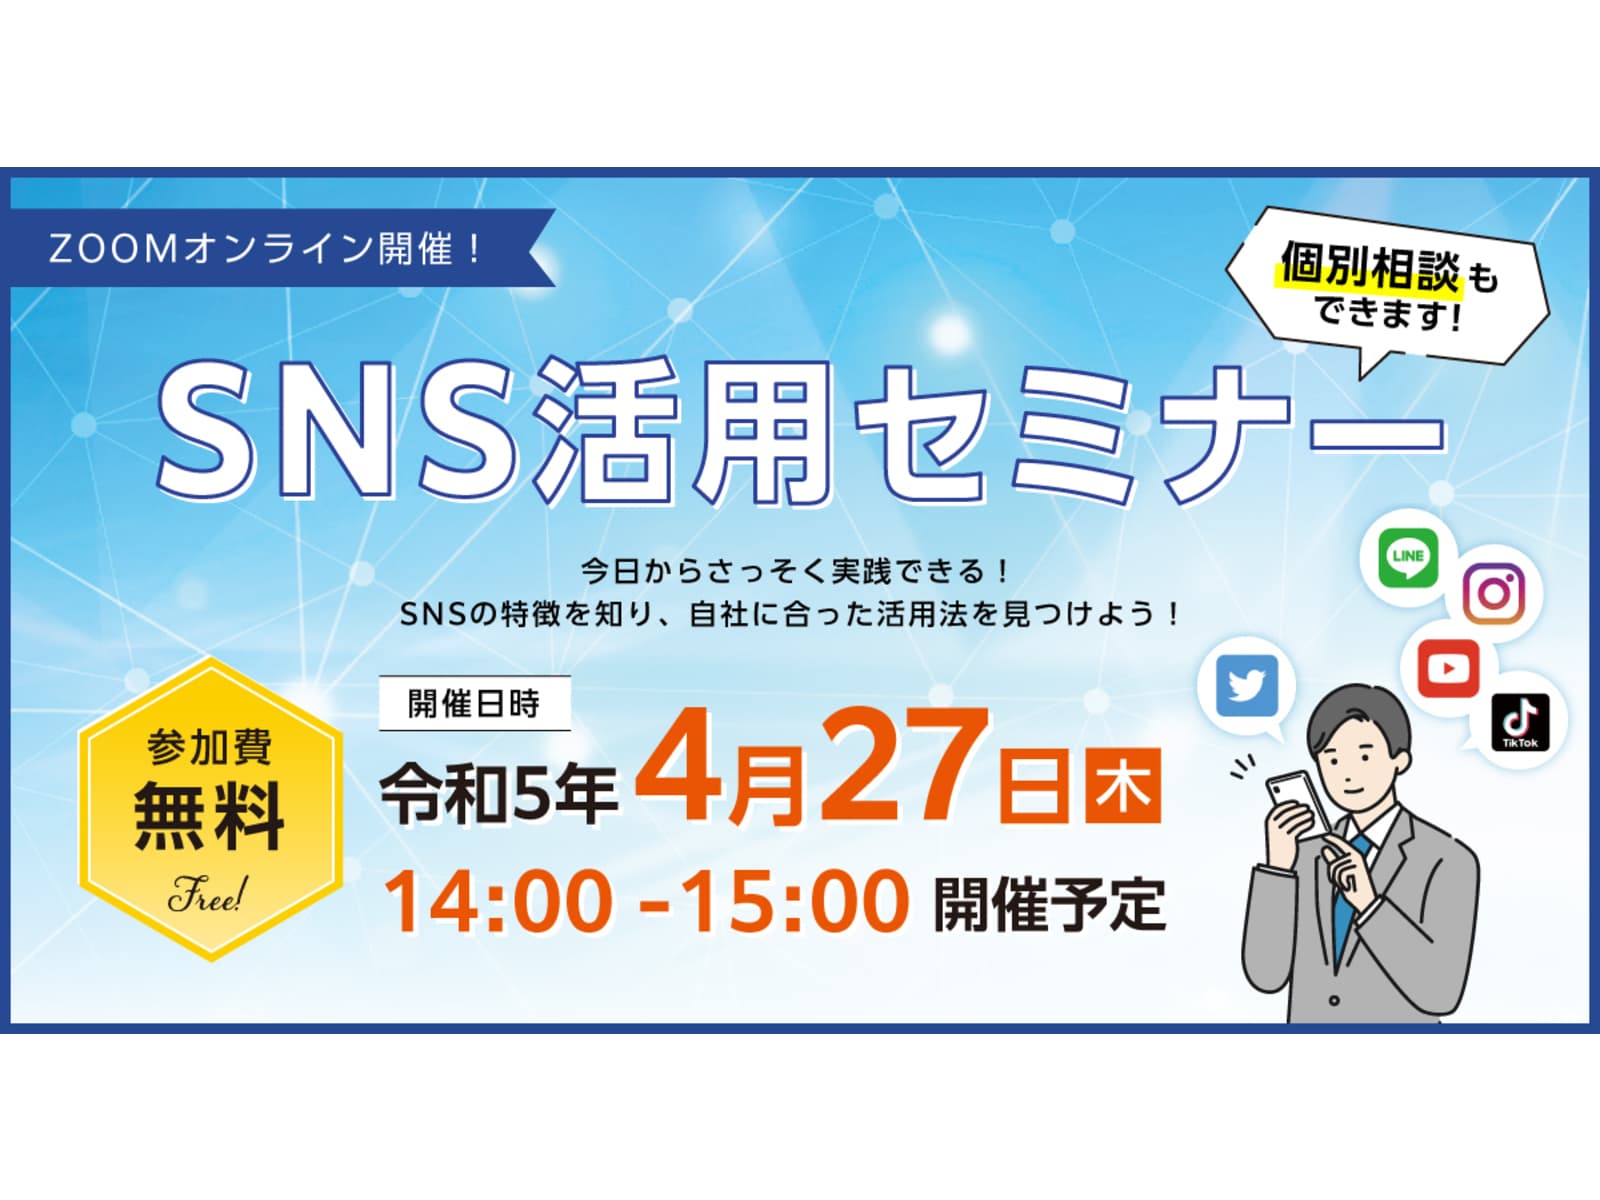 R5.4.27（木）【今日から使える】30分間の無料SNSセミナーを開催します！